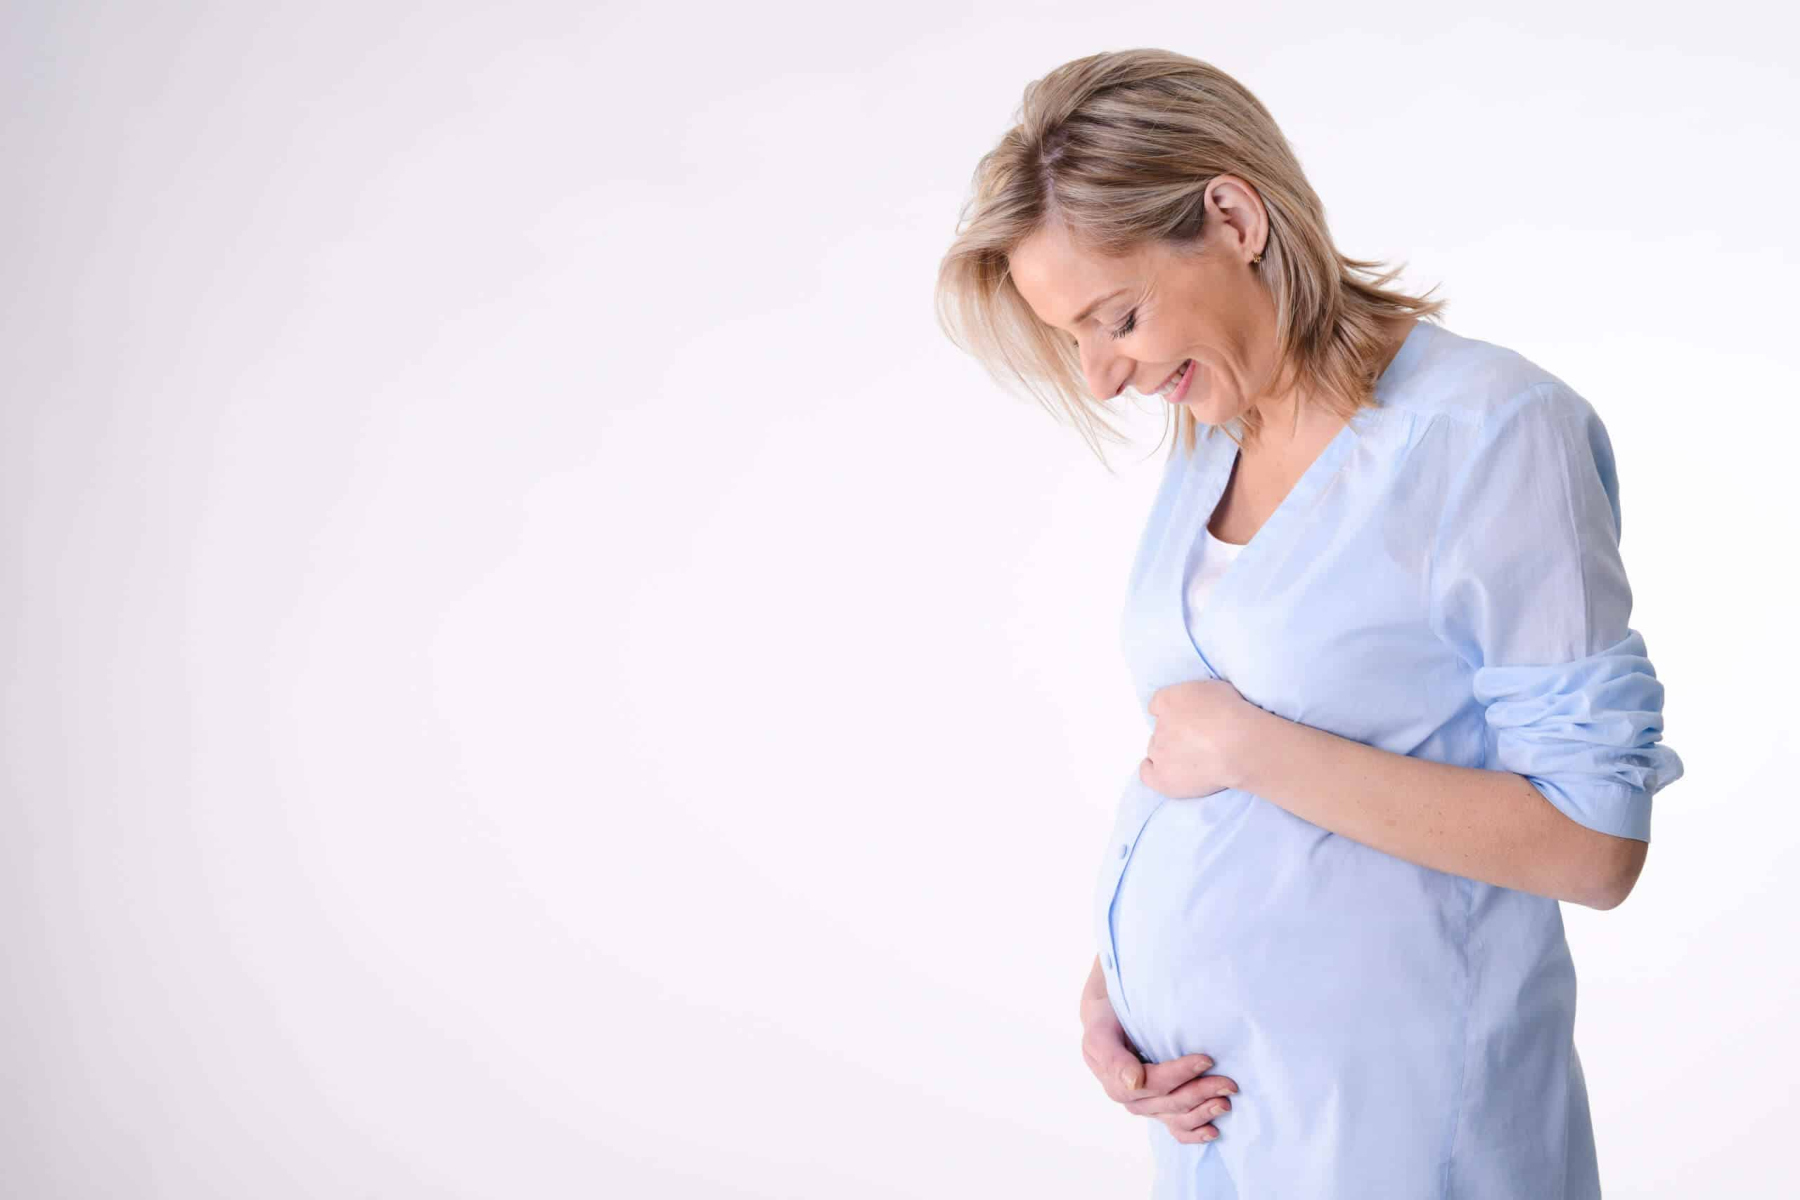 Αλλαγές στο μικροβίωμα εντέρου στην εγκυμοσύνη επηρεάζουν το ανοσοποιητικό